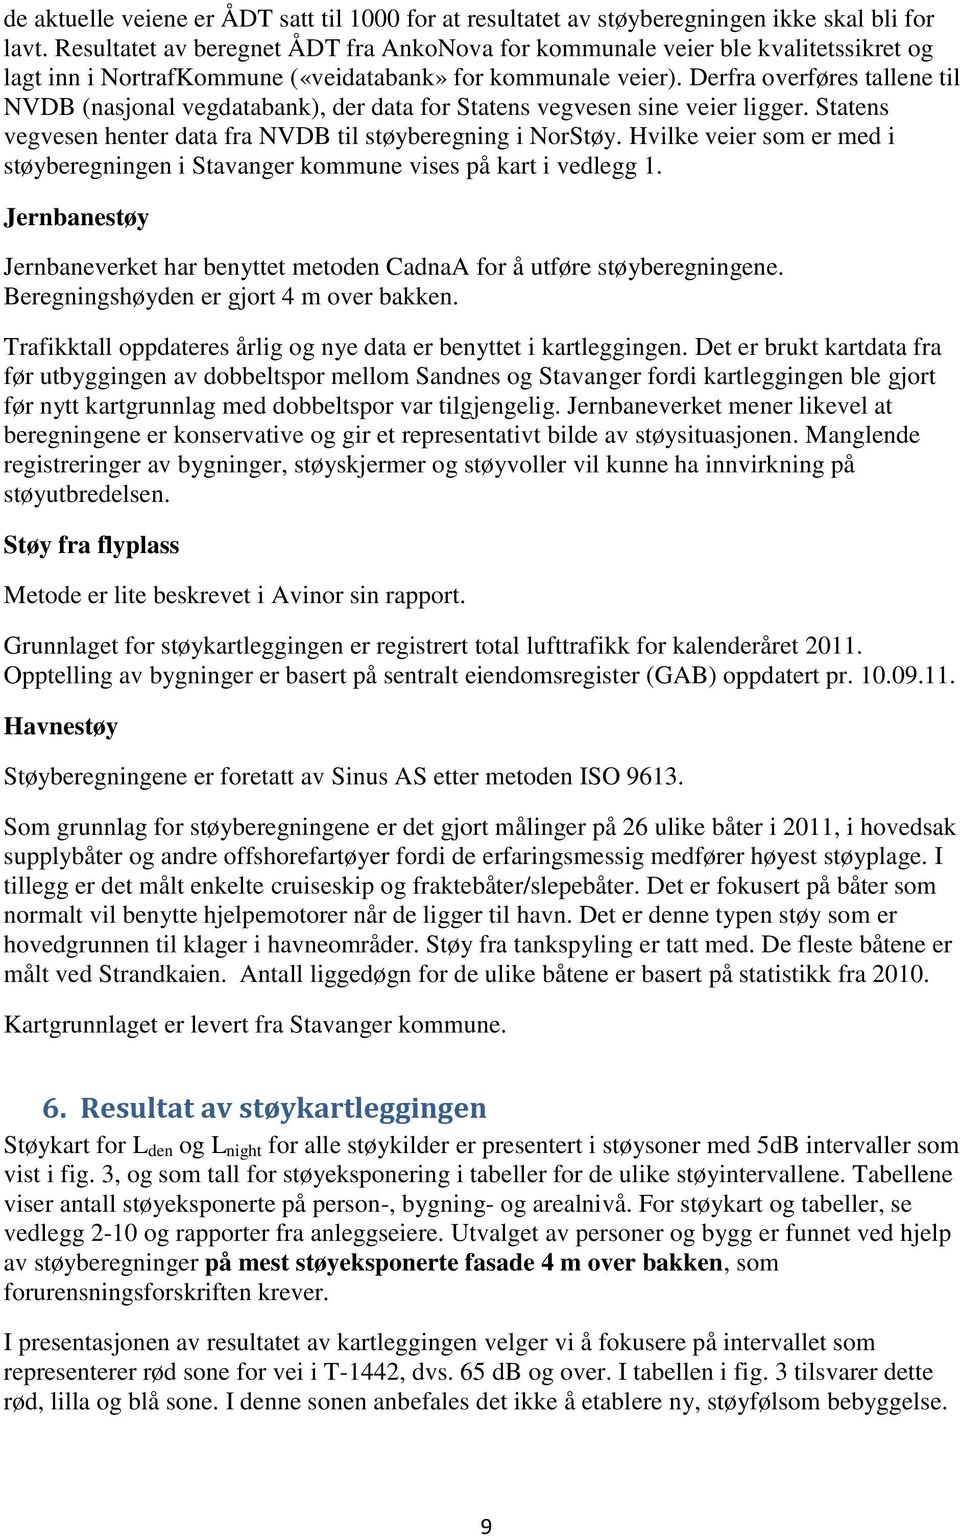 Derfra overføres tallene til NVDB (nasjonal vegdatabank), der data for Statens vegvesen sine veier ligger. Statens vegvesen henter data fra NVDB til støyberegning i NorStøy.